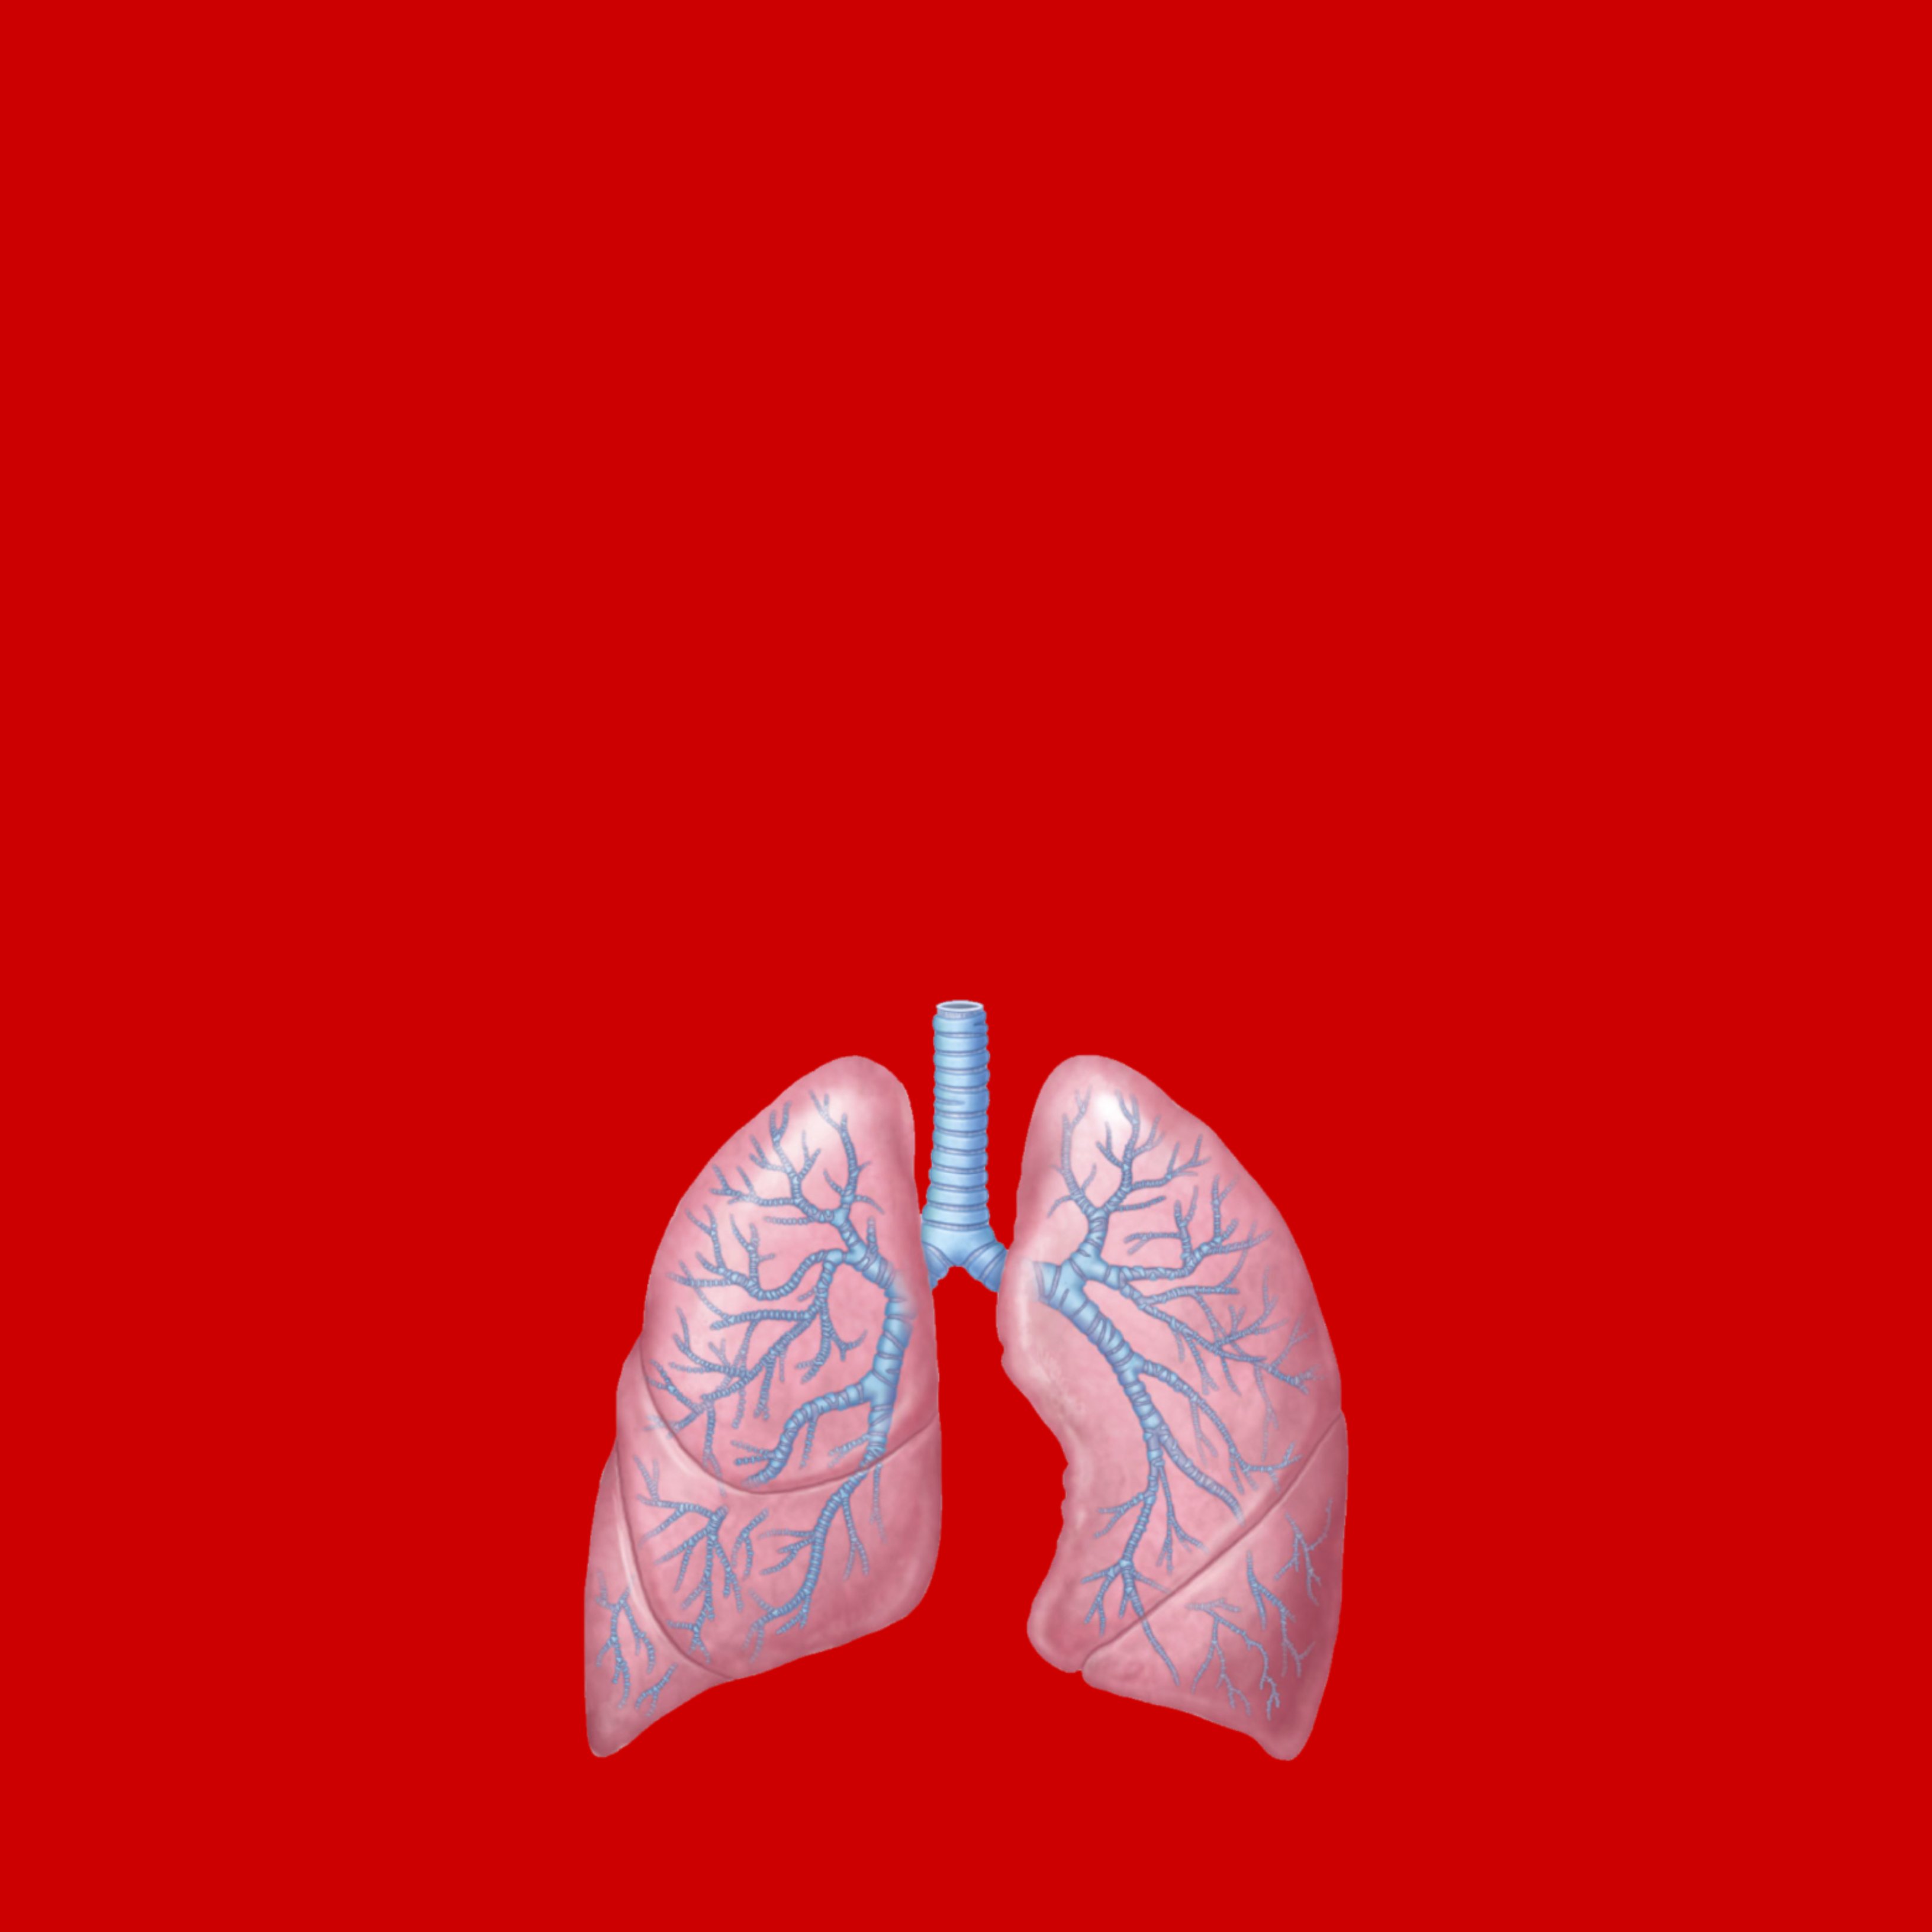 La terapia dirigida, puede ser el tratamiento permanente de cáncer de pulmón